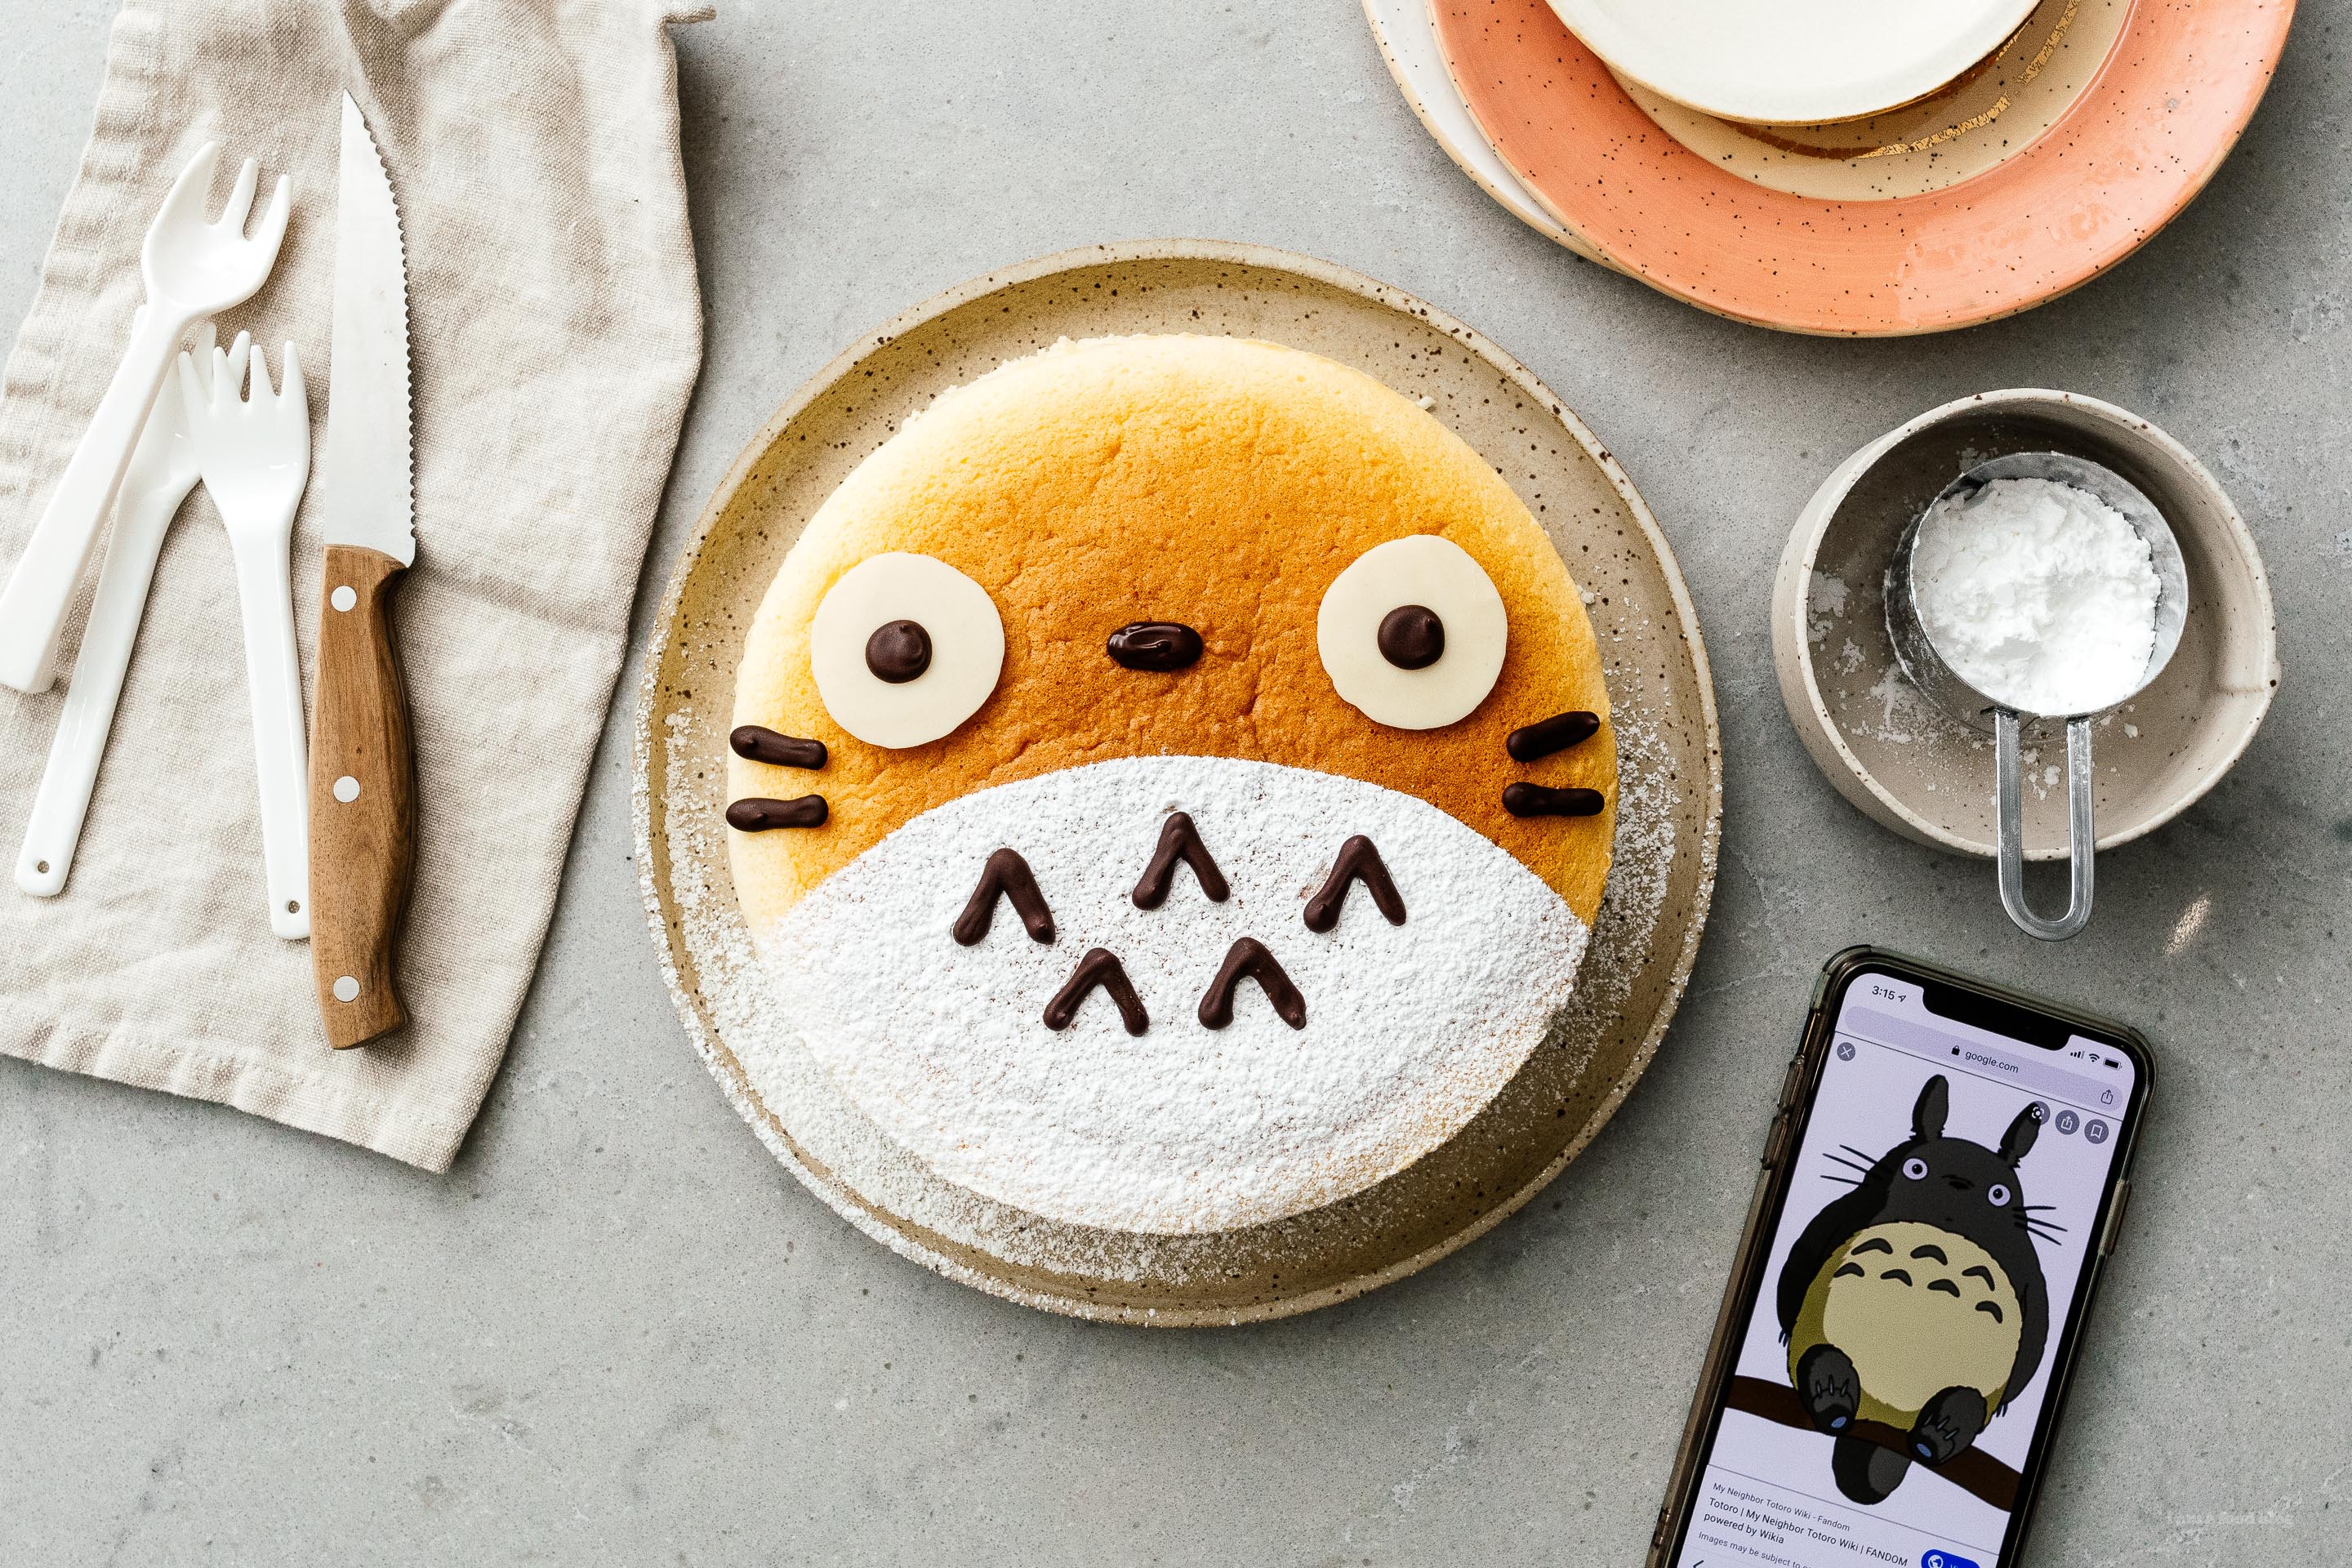 සුපිරි හුරුබුහුටි, Chewy Totoro Cheesecake - මිහිරි ඉඟියක් සමඟ වාතය මෙන් සැහැල්ලු මෘදු, හපන චීස් කේක්. #cheesecake #japanesecheesecake #fluffycheesecake #totorocake #totorocheesecake #totorofood #kawaiifood